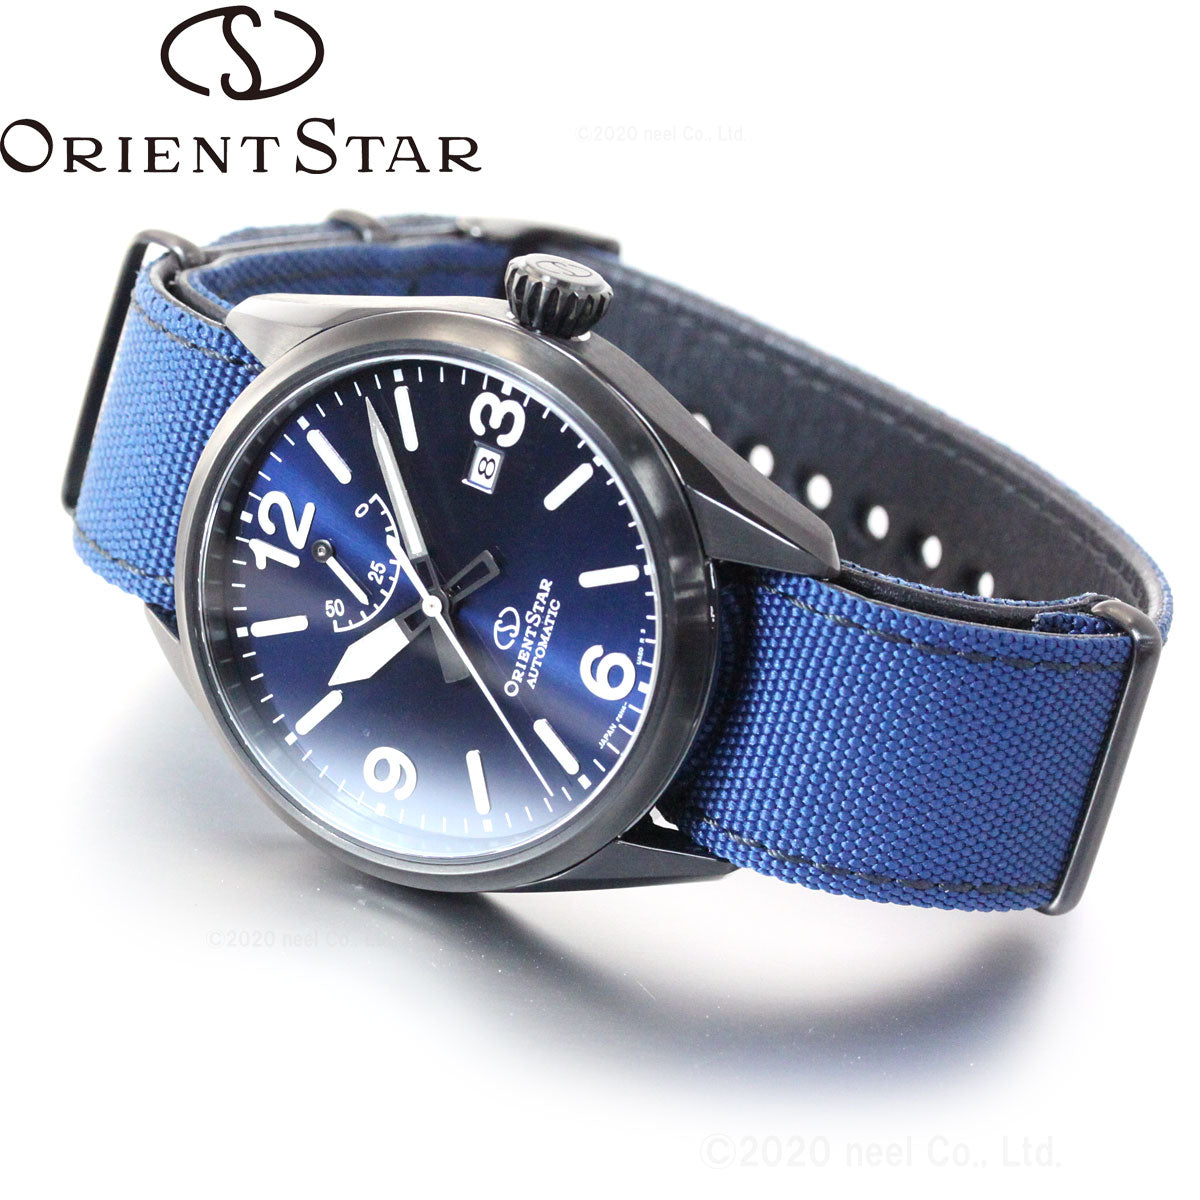 オリエントスター ORIENT STAR 腕時計 メンズ 自動巻き メカニカル スポーツ アウトドア RK-AU0207L